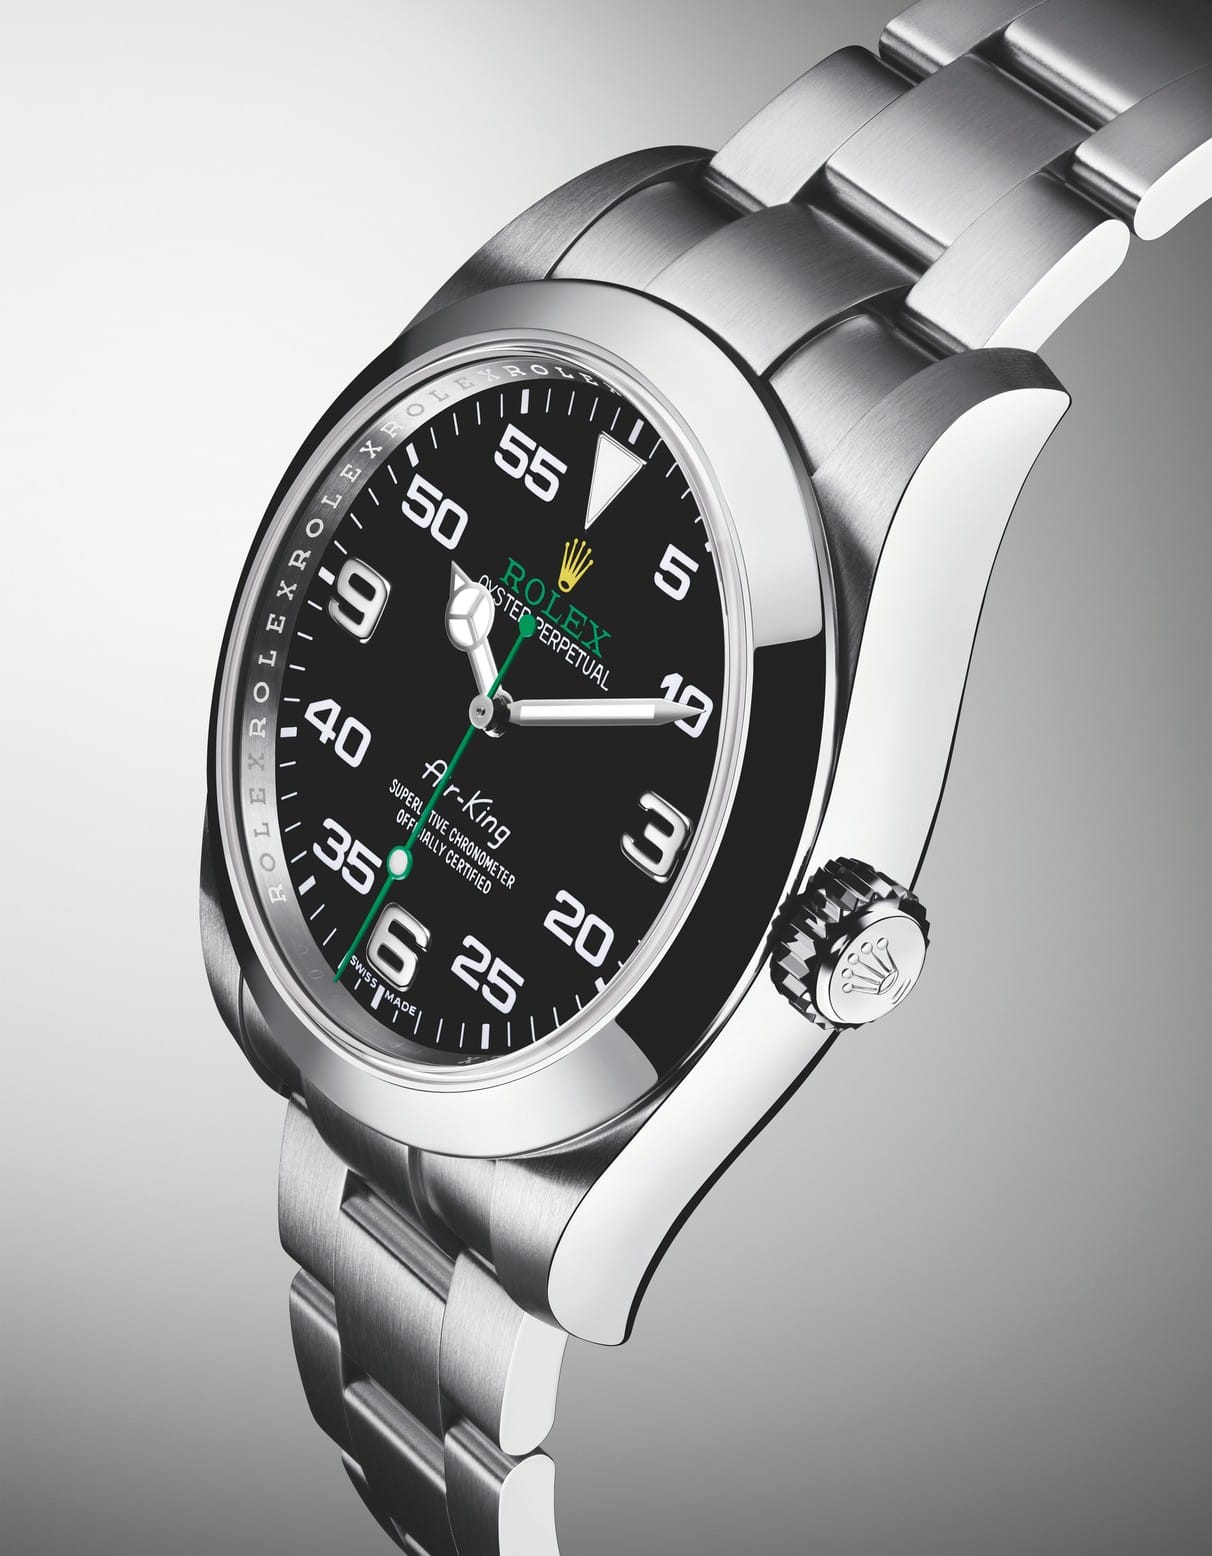 Auch Rolex zeigt zahlreiche neue Uhren. Zu den Highlights zählt die Rolex Oyster Perpetual Air King für rund 5500 Euro.